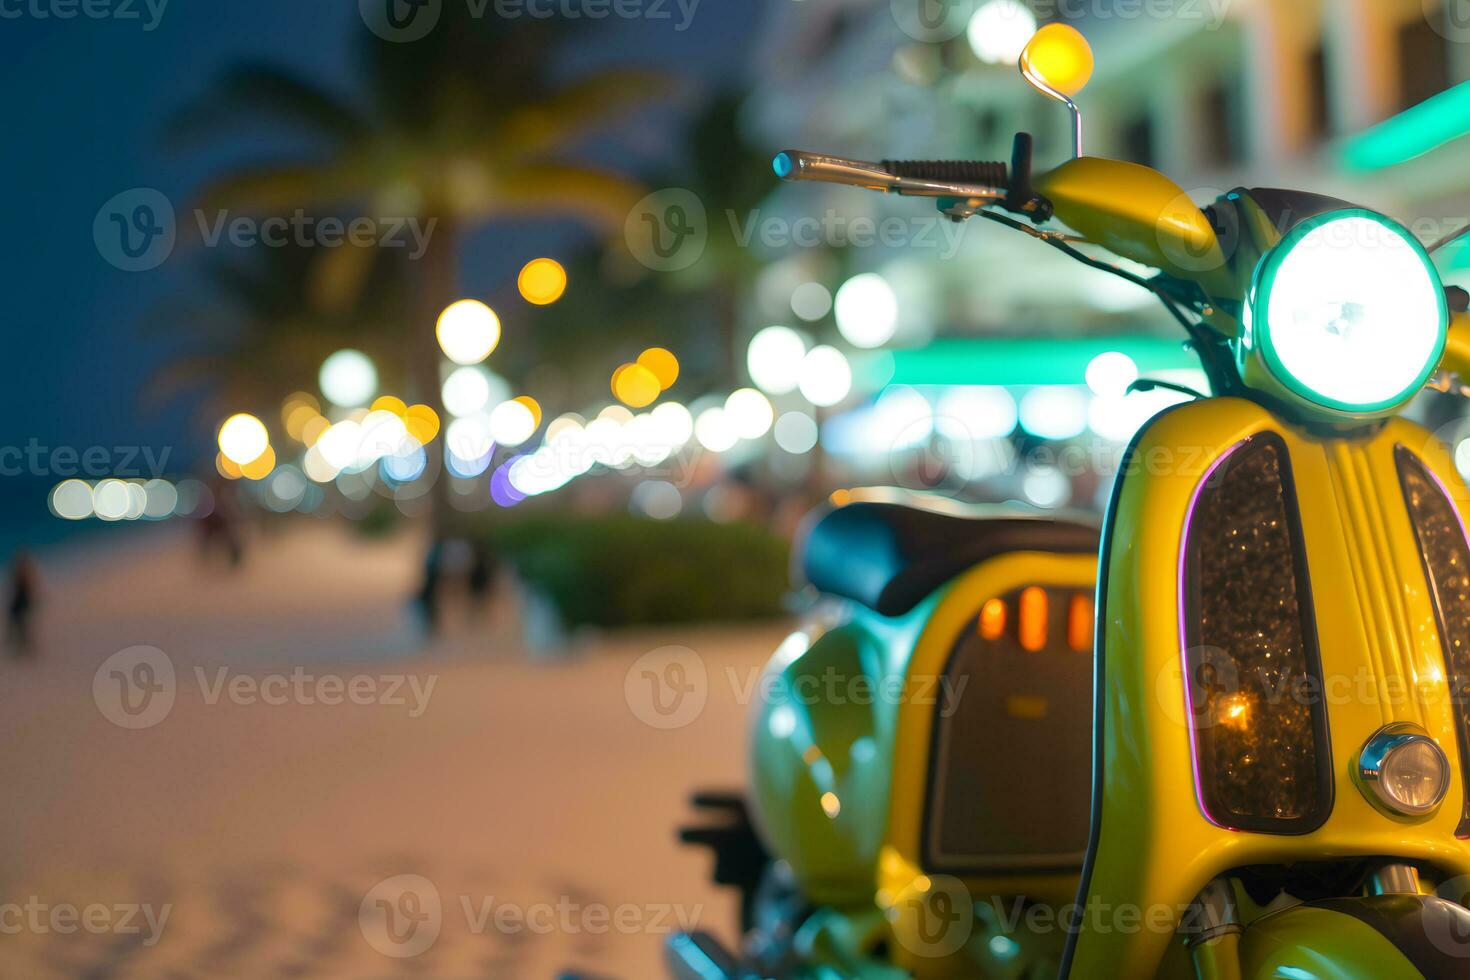 scooter vélomoteur à océan conduire Miami plage à nuit avec néon lumières de hôtels. neural réseau ai généré photo